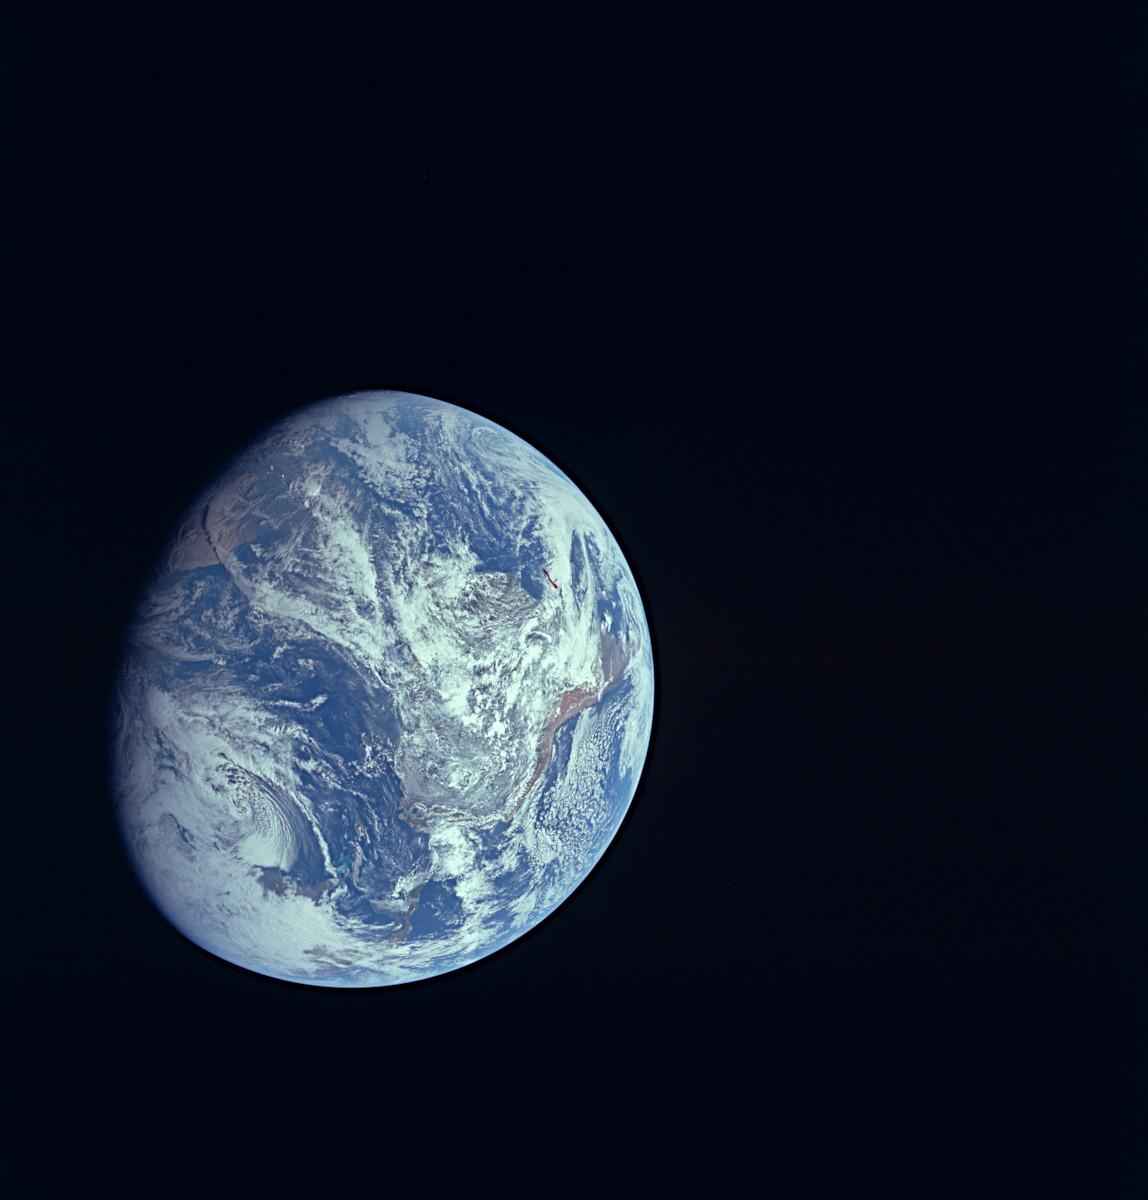 アポロ8号で人類が初めて撮影した地球の全体像 アストロピクス